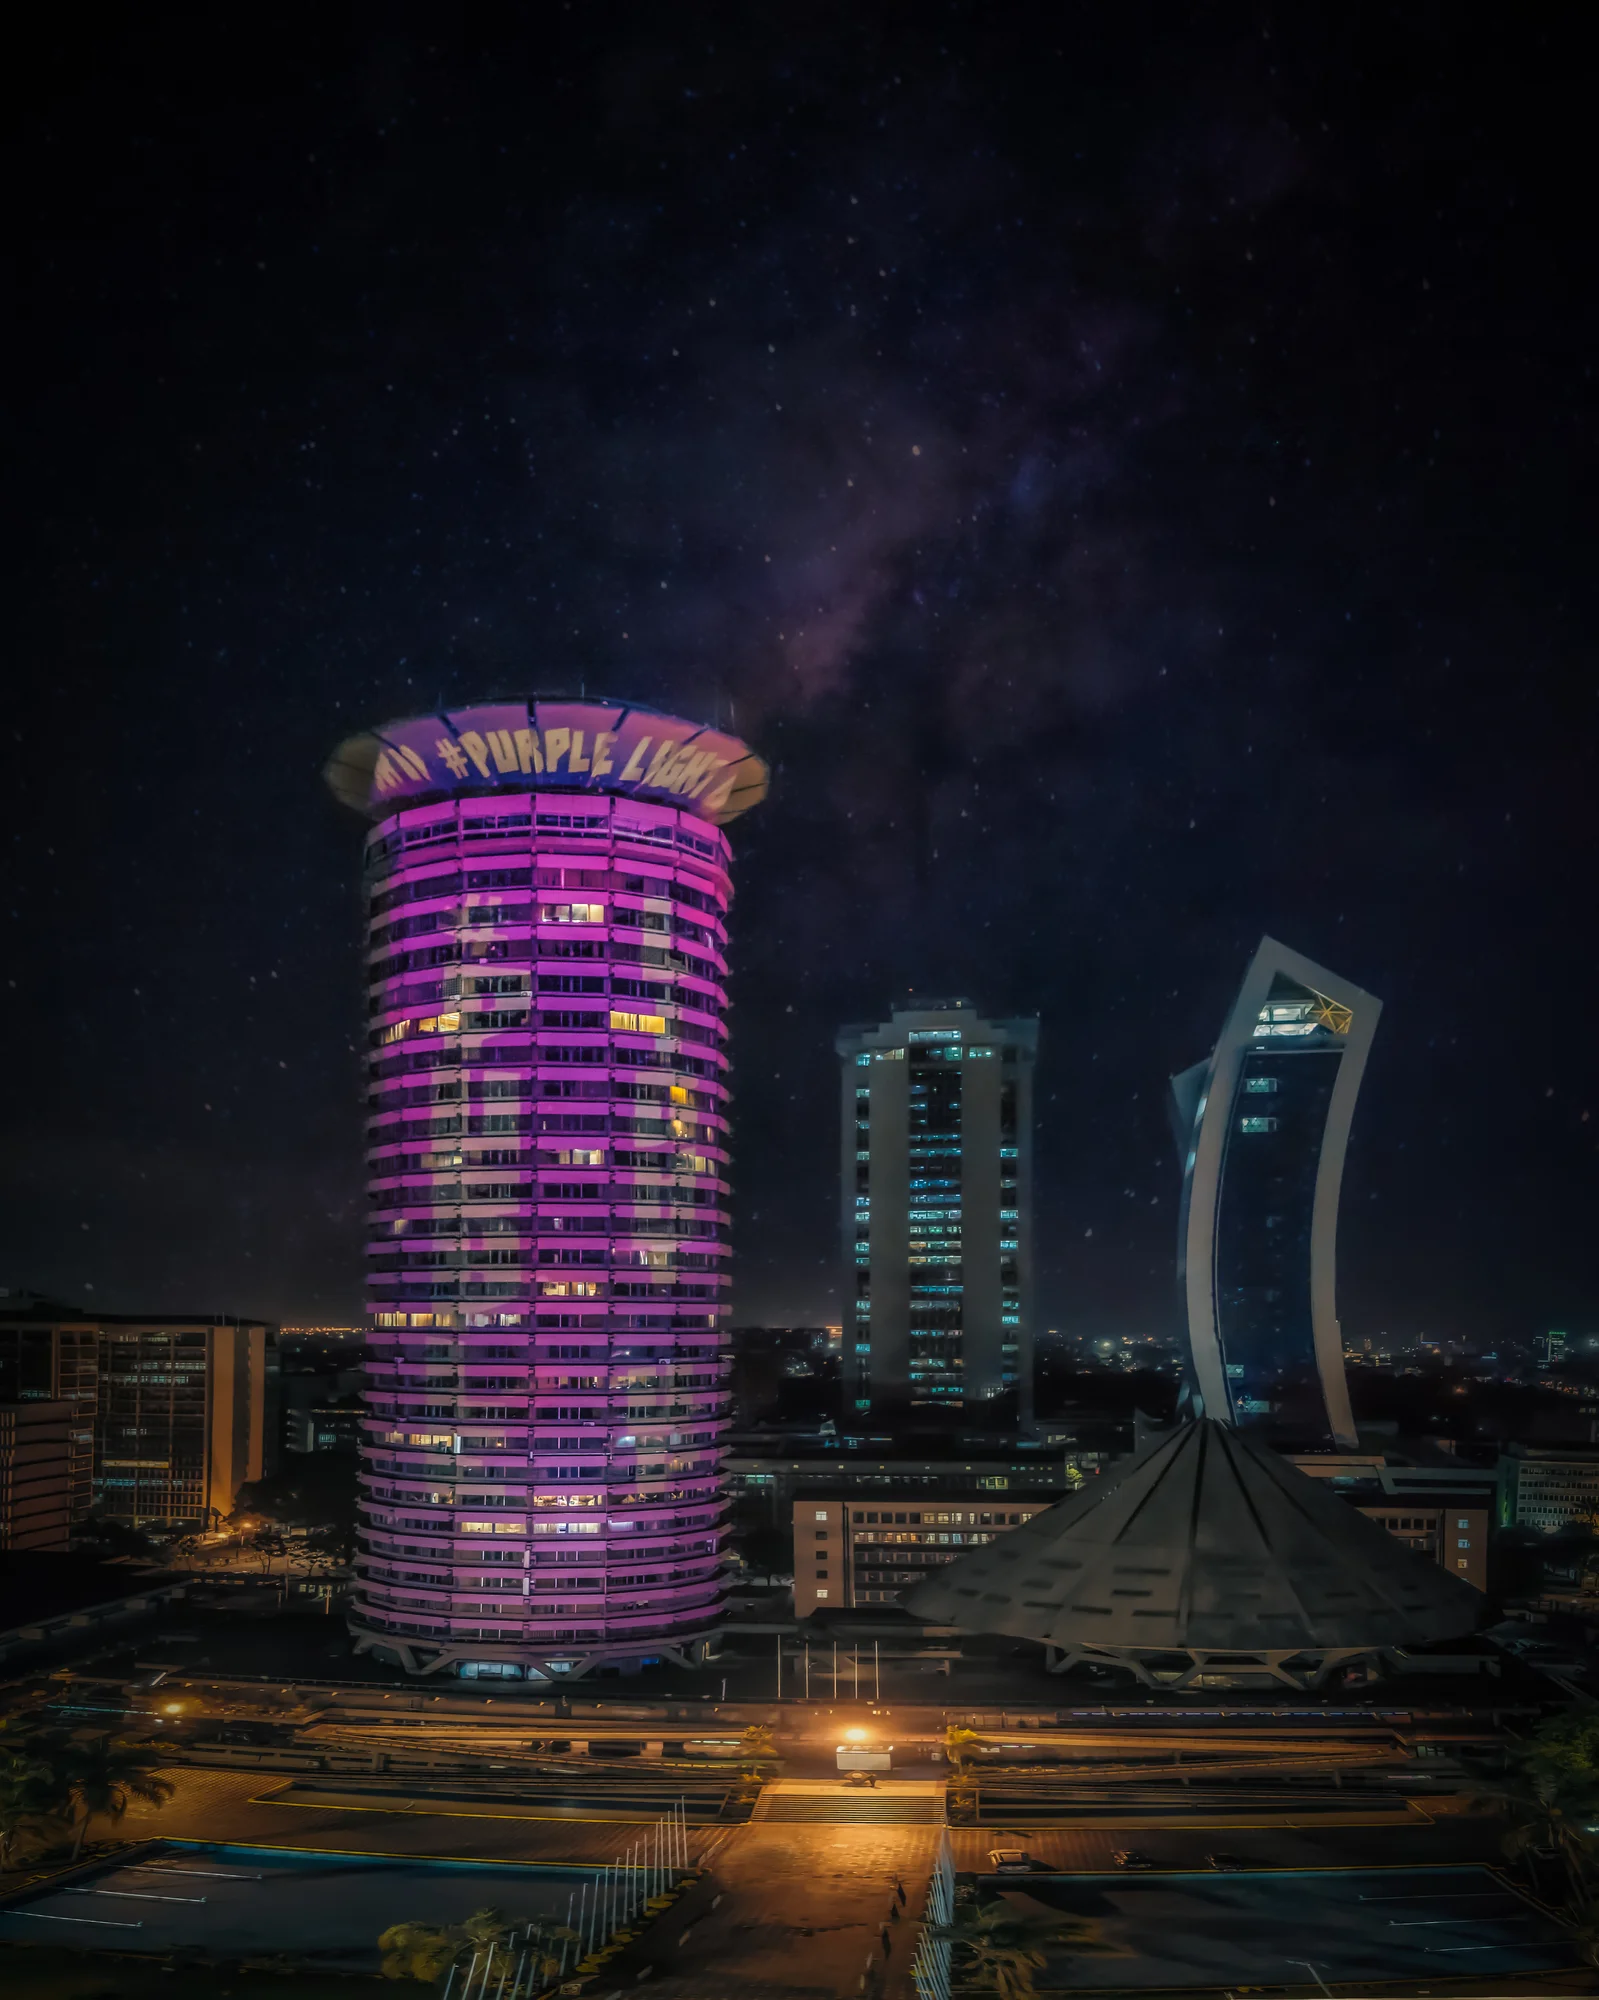 Das Kenyatta International Conference Center in Nairobi, Kenia. es ist lila beleuchtet und um das oberste Stockwerk des runden Gebäudes steht in weißer Schrift #PurpleLightUp.